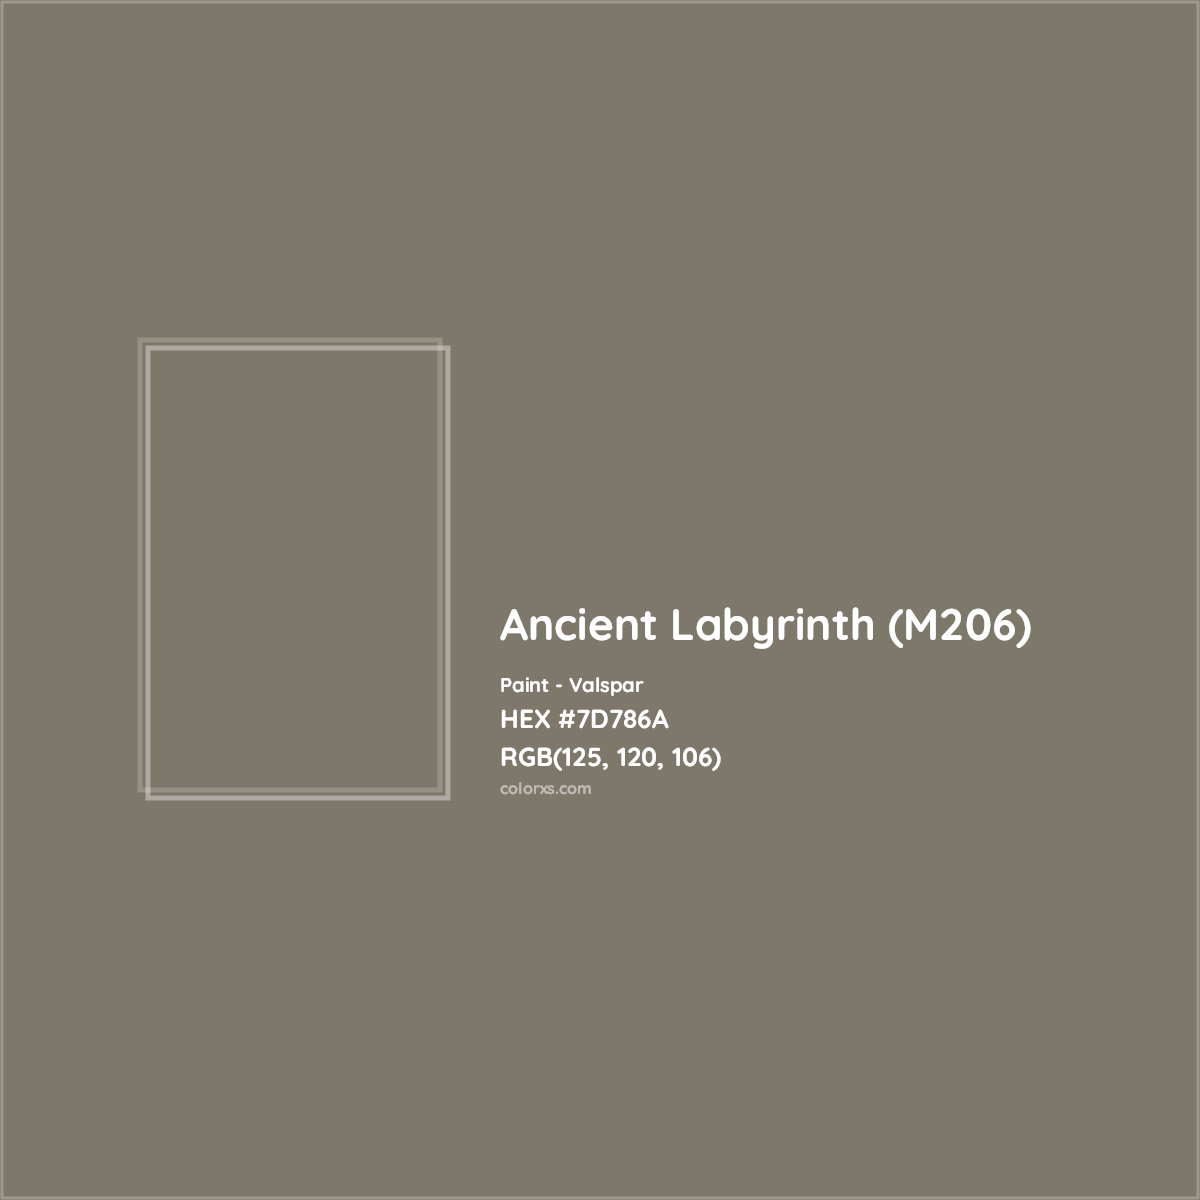 HEX #7D786A Ancient Labyrinth (M206) Paint Valspar - Color Code